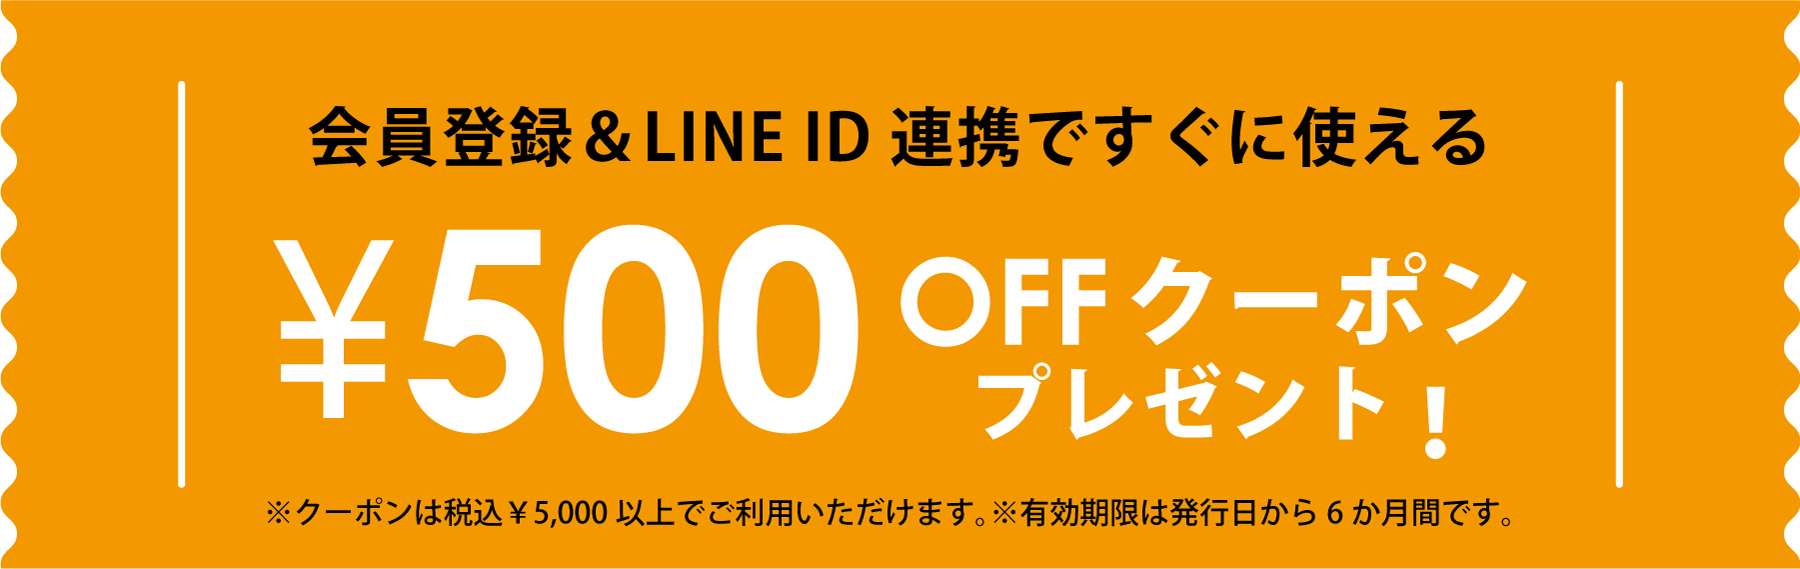 会員登録とLINE ID連携でクーポン500円クーポン